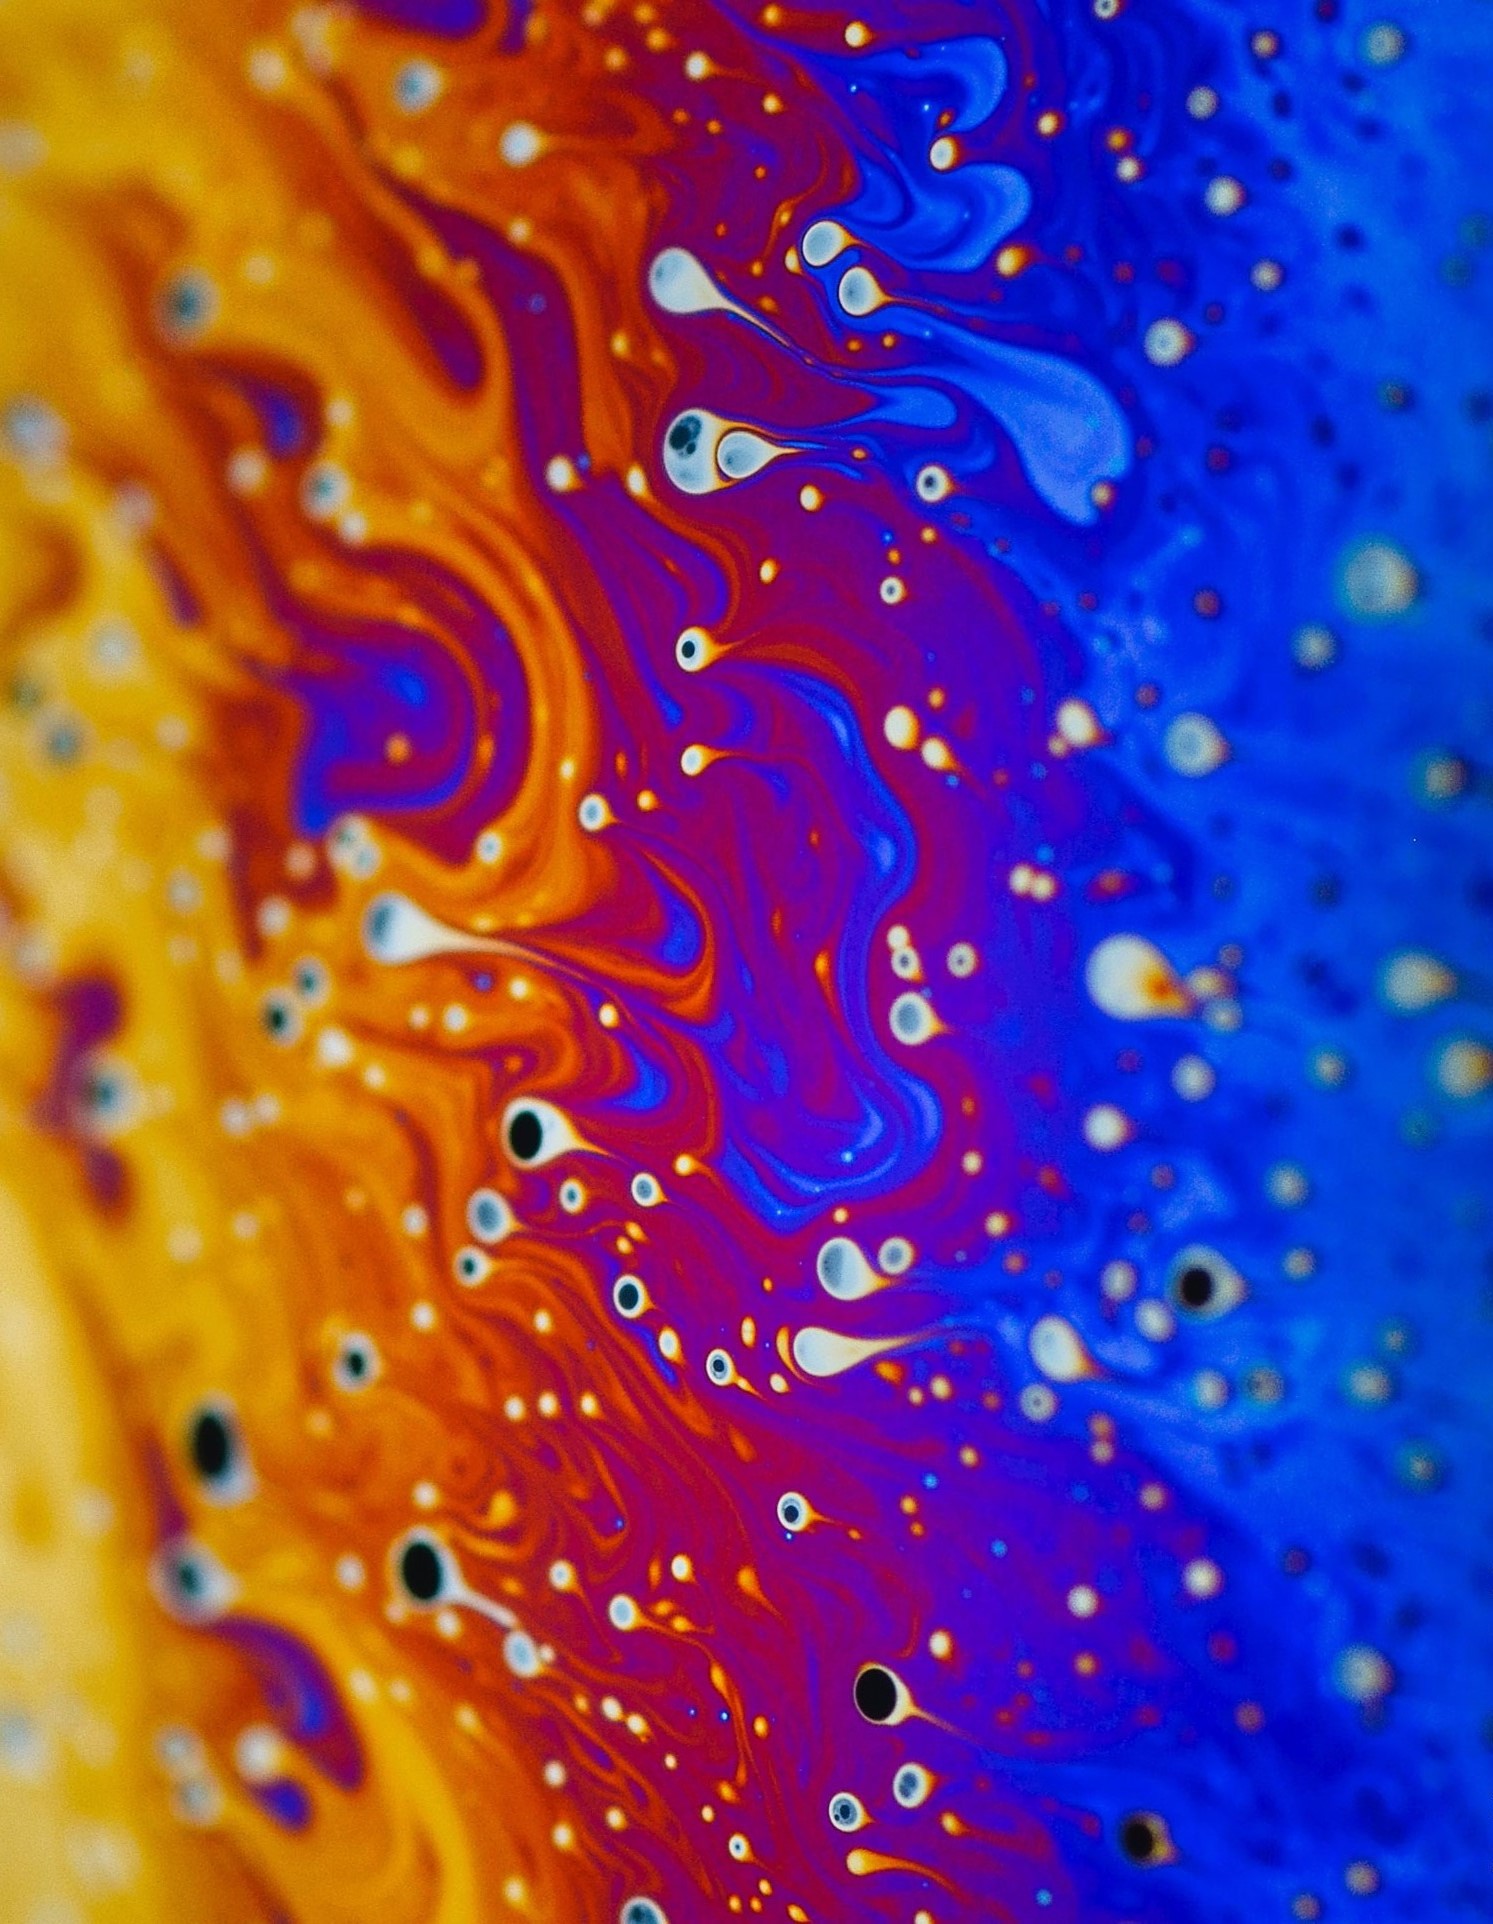 En la imagen se observa una mezcla de agua y jabón. Al iluminar las pompas, se da lugar a formas y colores eléctricos. Destacan las ondas de azul, naranja y rosa.